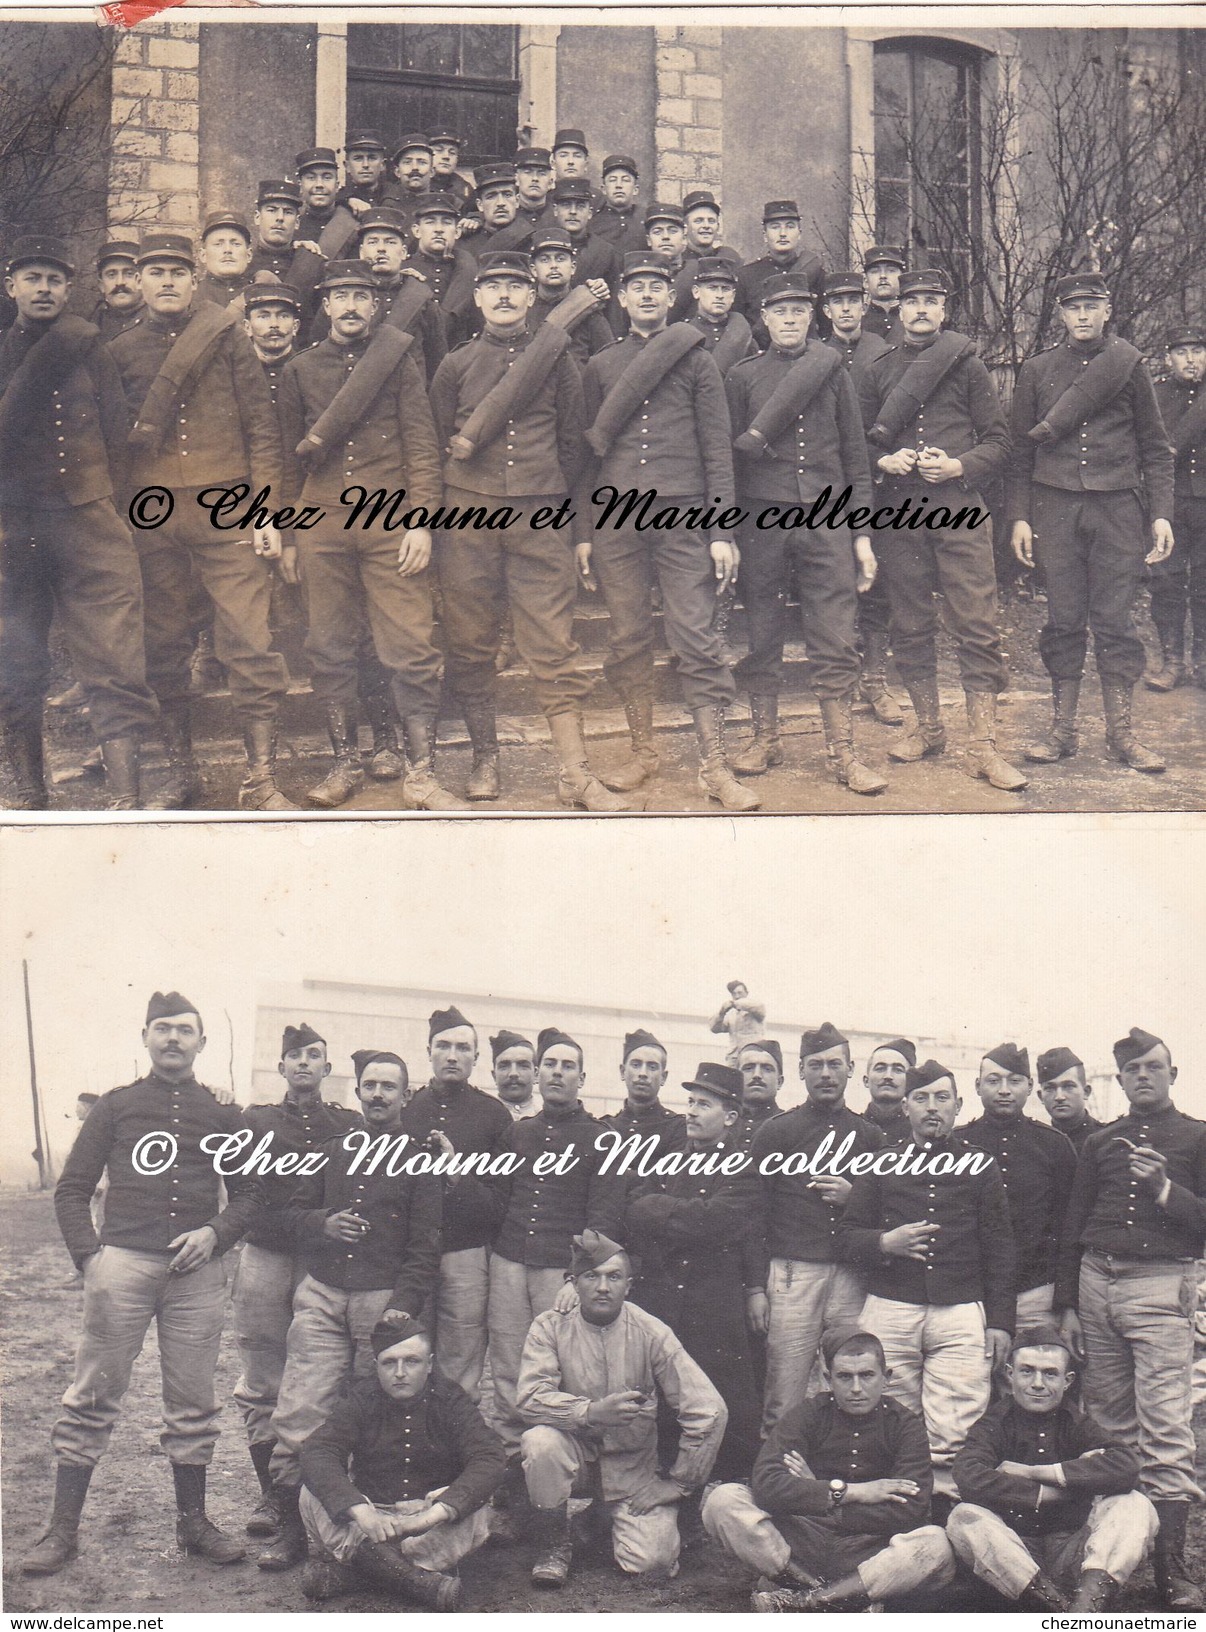 TOUL 1913 - 6 EME REGIMENT D ARTILLERIE DE FORTERESSE - MEURTHE ET MOSELLE PUY MALSIGNAT CREUSE - LOT DE 2 CARTES PHOTOS - Régiments